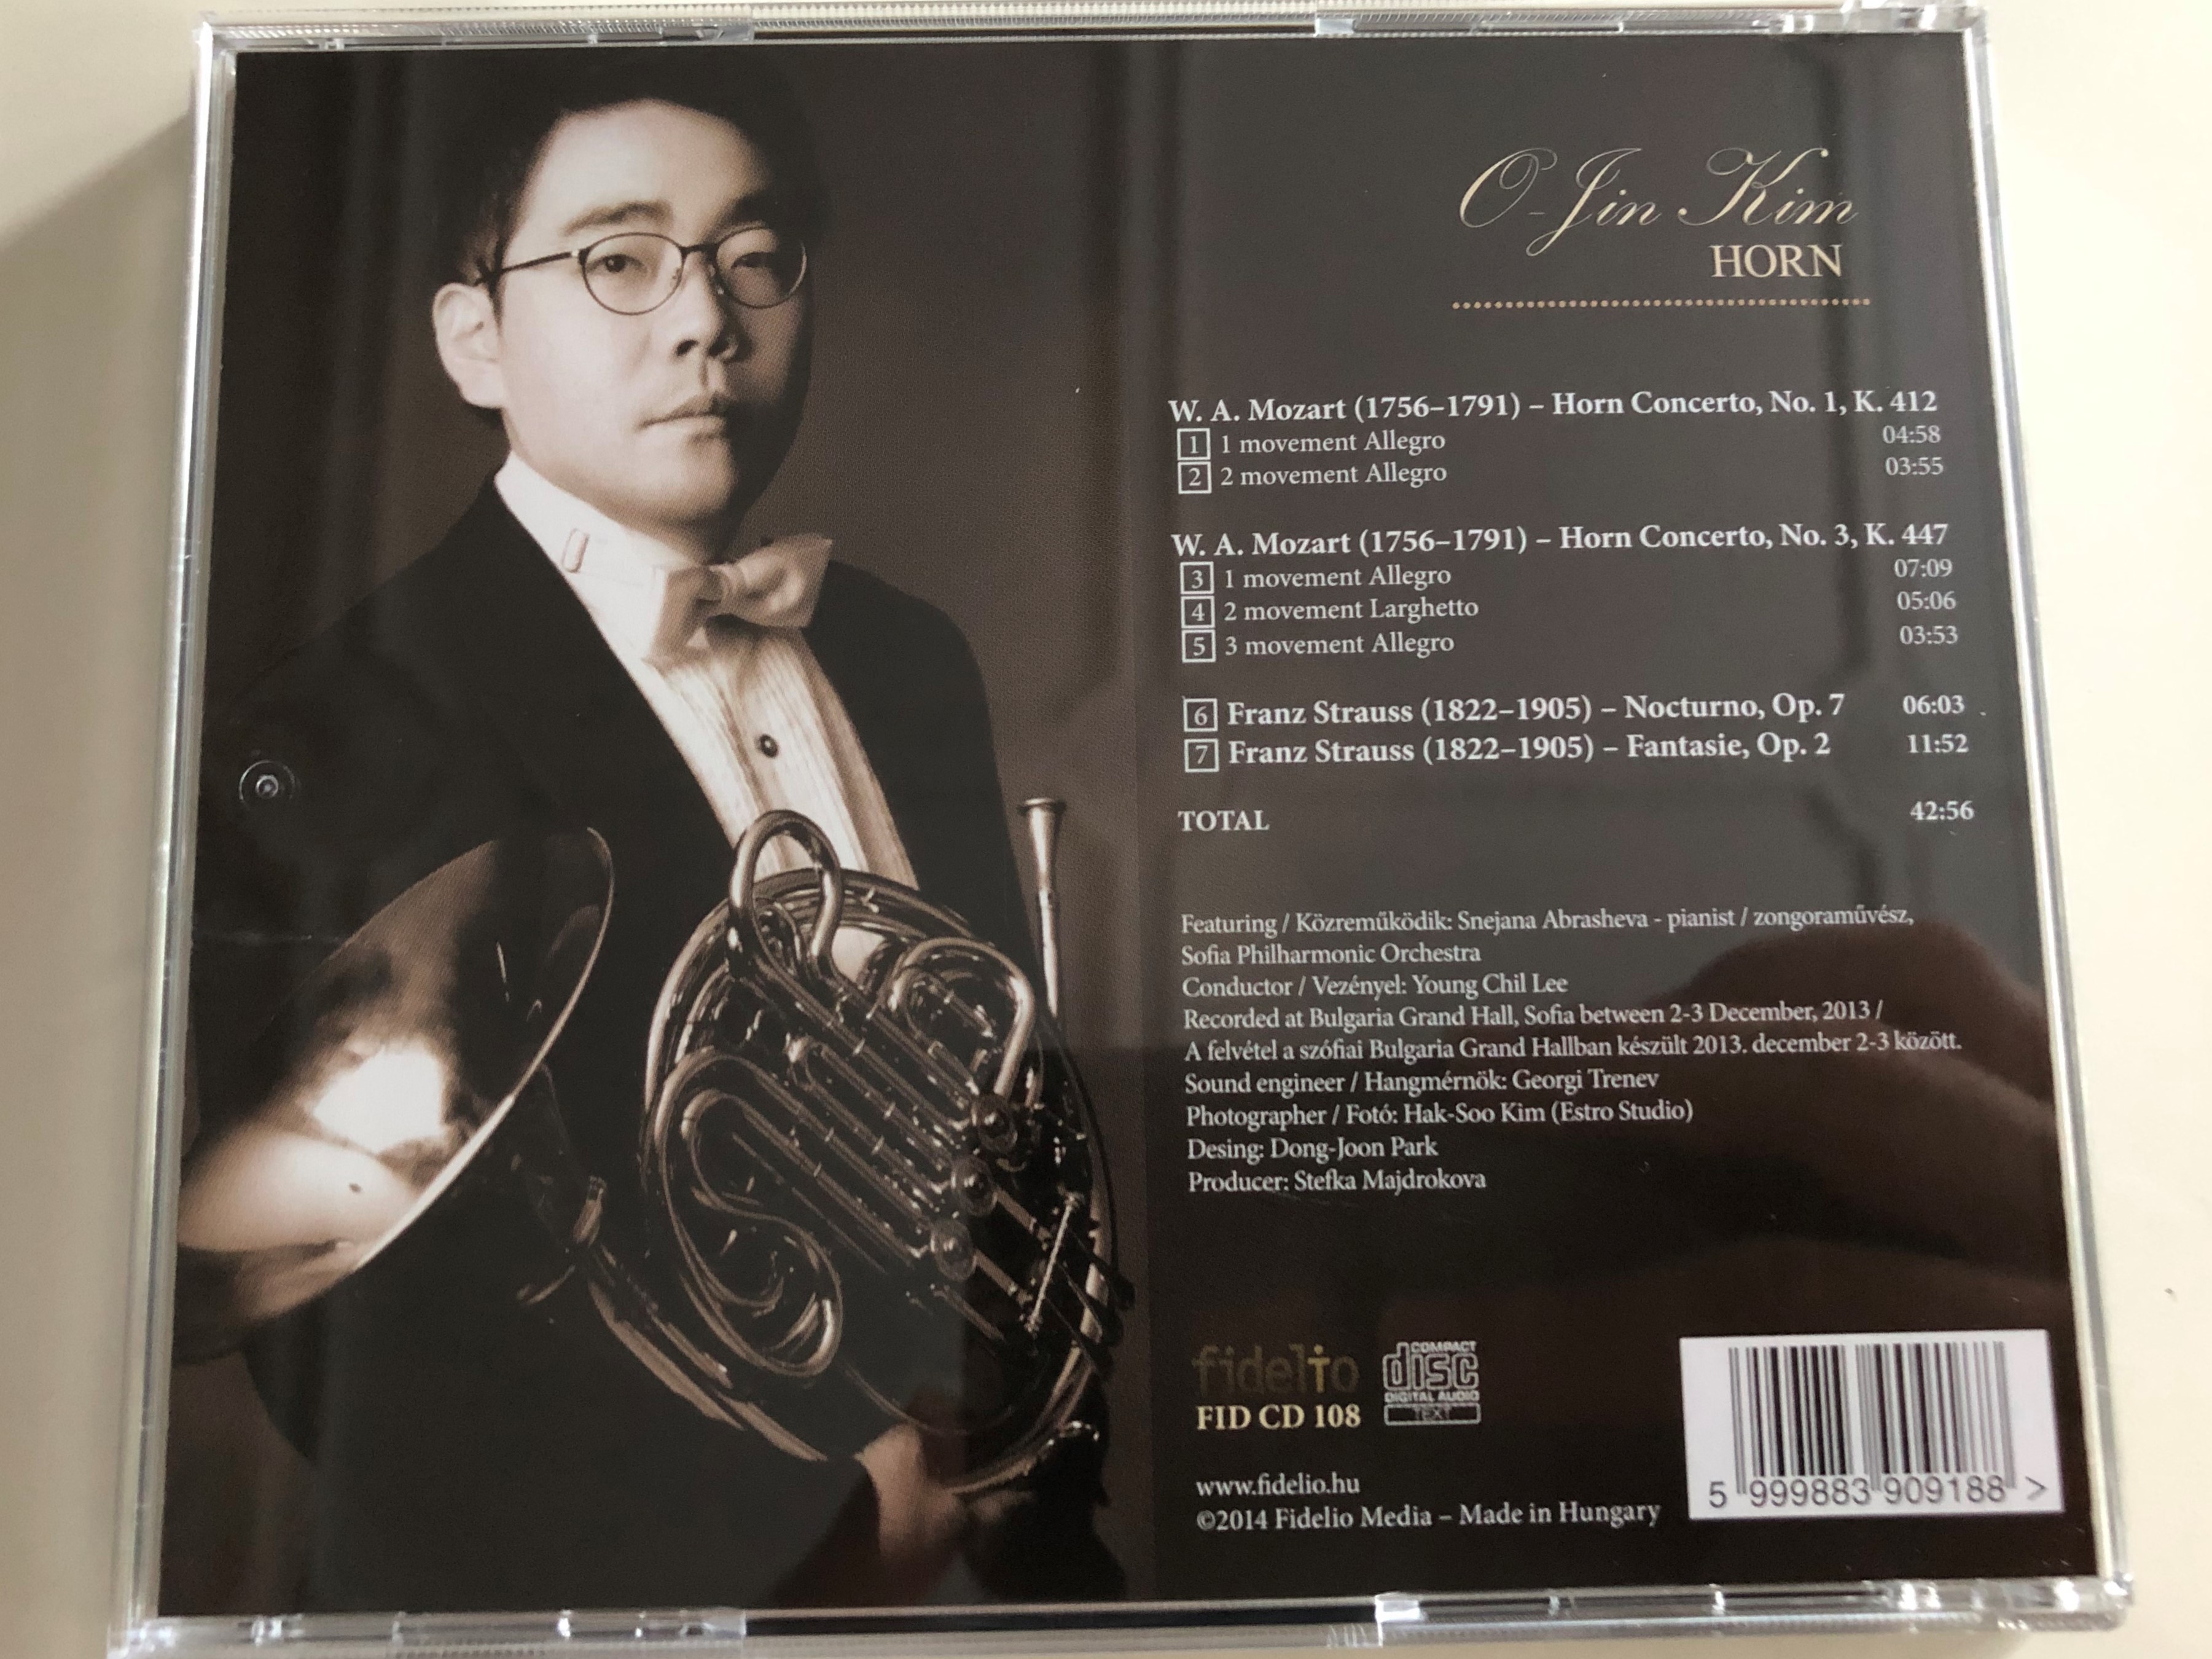 o-jin-kim-horn-mozart-horn-concerto-no.1-no.-3-franz-strauss-nocturno-op.-7-fantasie-op.-2-audio-cd-2014-fidelio-fid-cd-108-7-.jpg